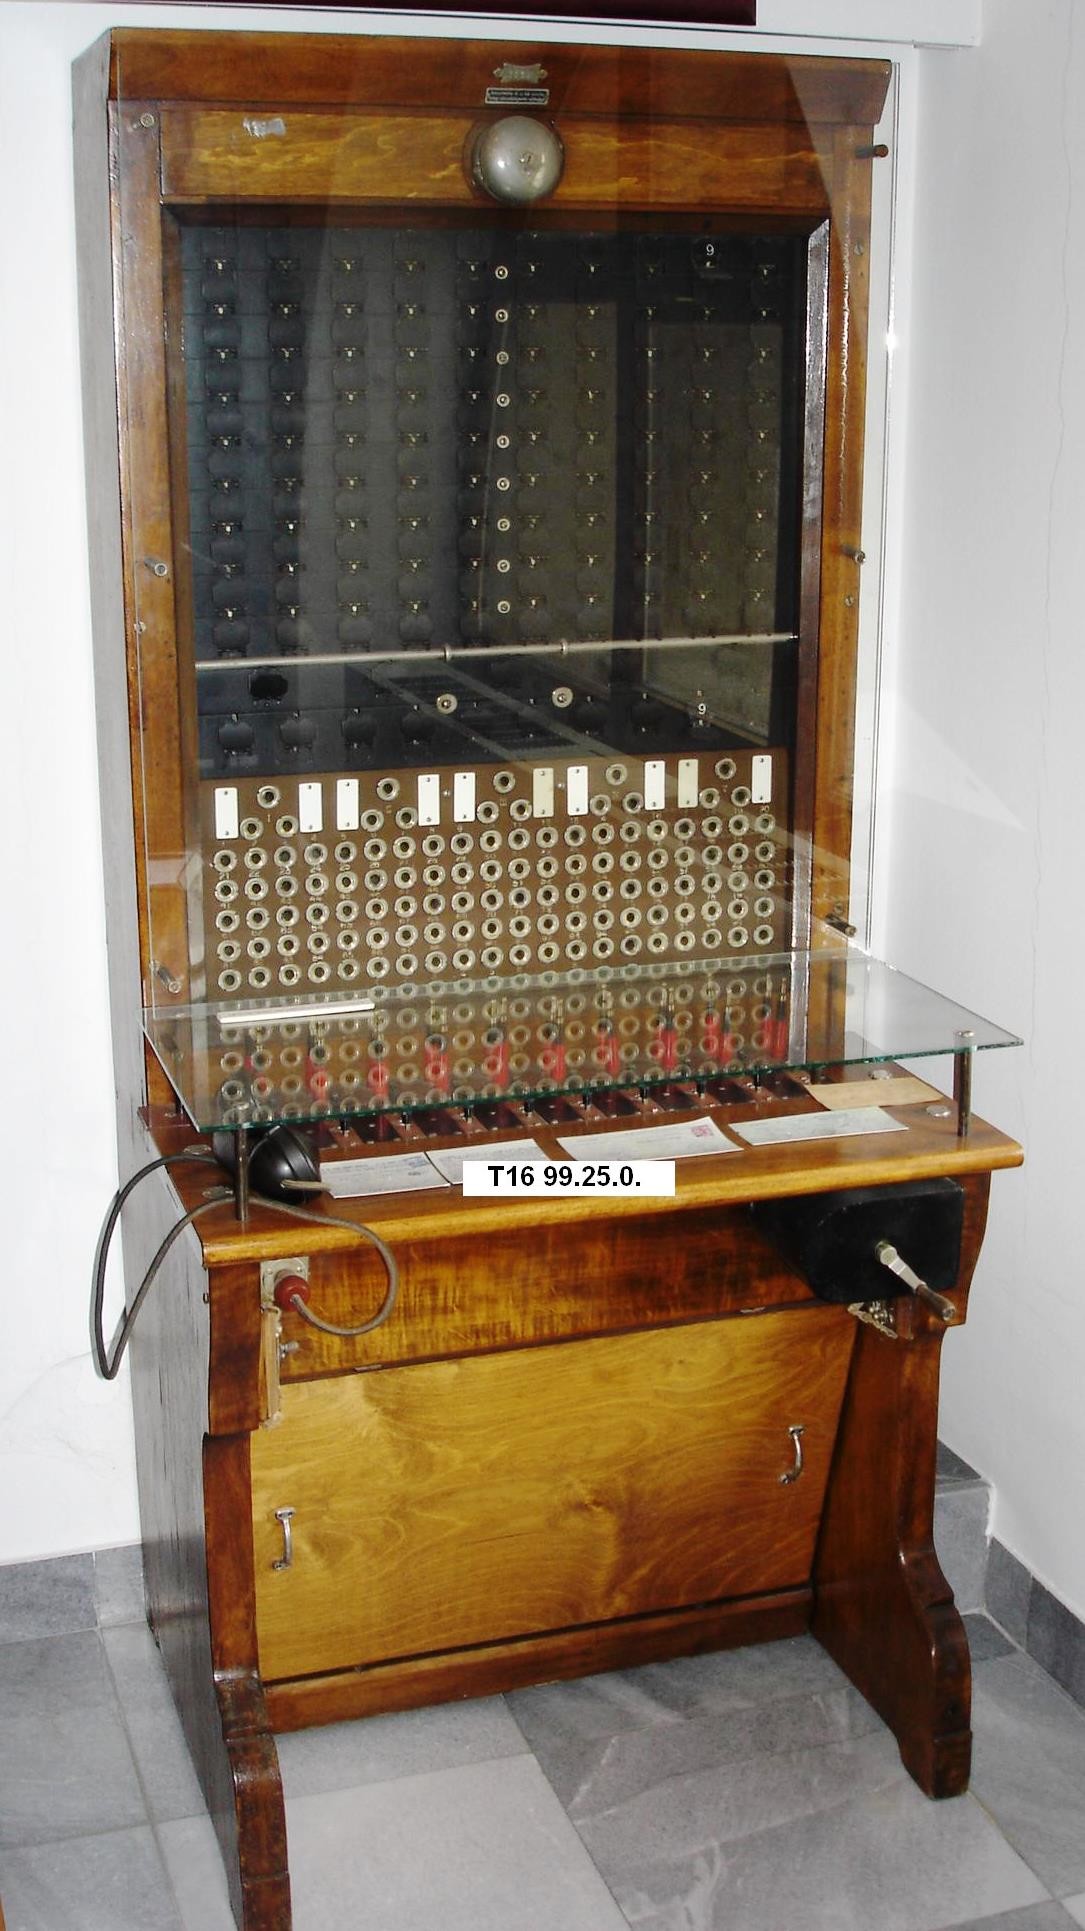 LB 100-as régi szabványú kapcsoló (Postamúzeum CC BY-NC-SA)